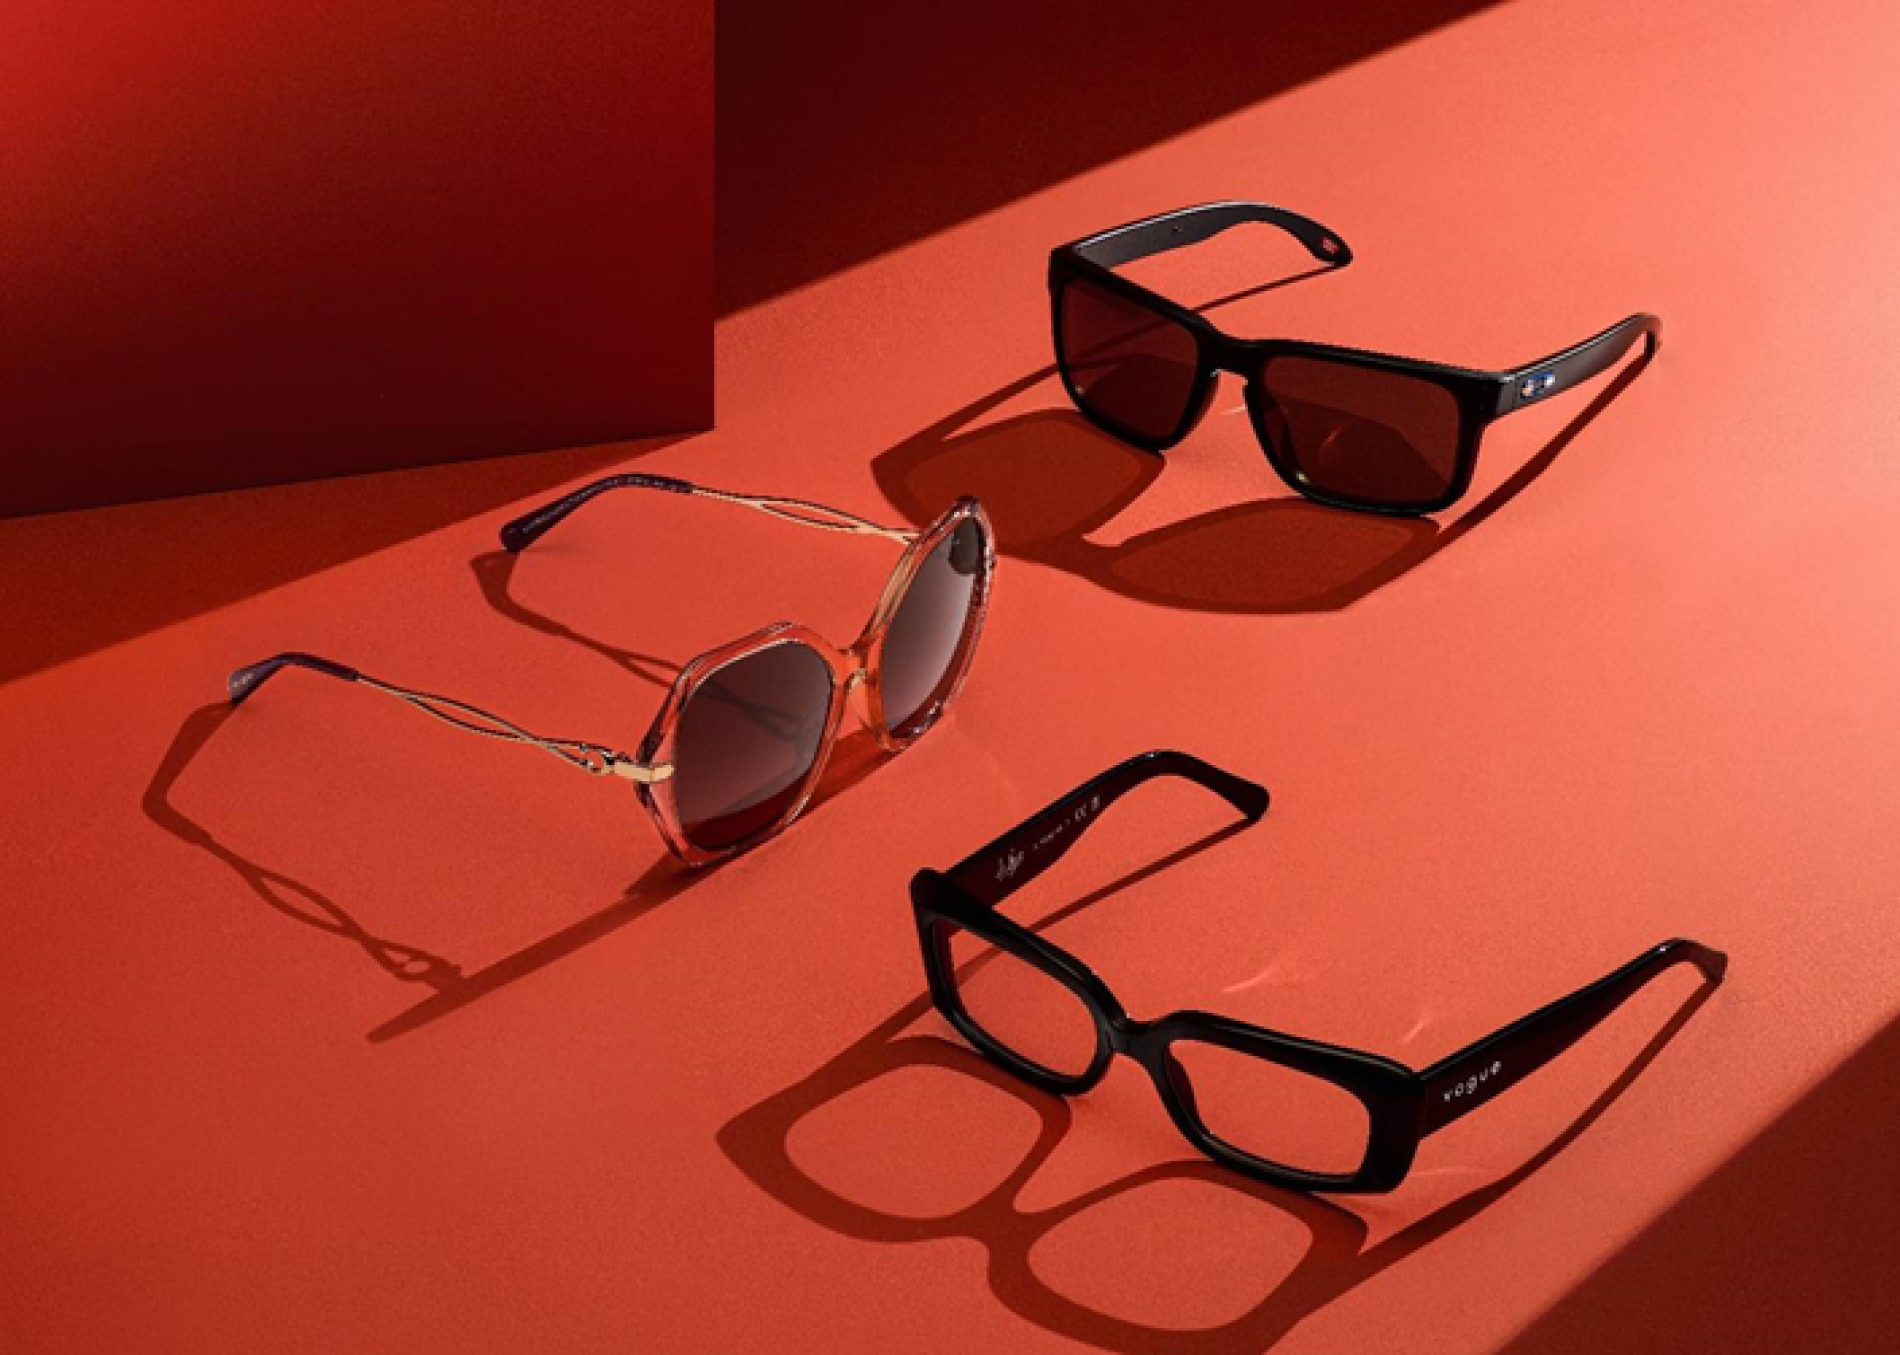 Cuidado de la salud visual con gafas oftálmicas y de sol, en temporada de descuentos 